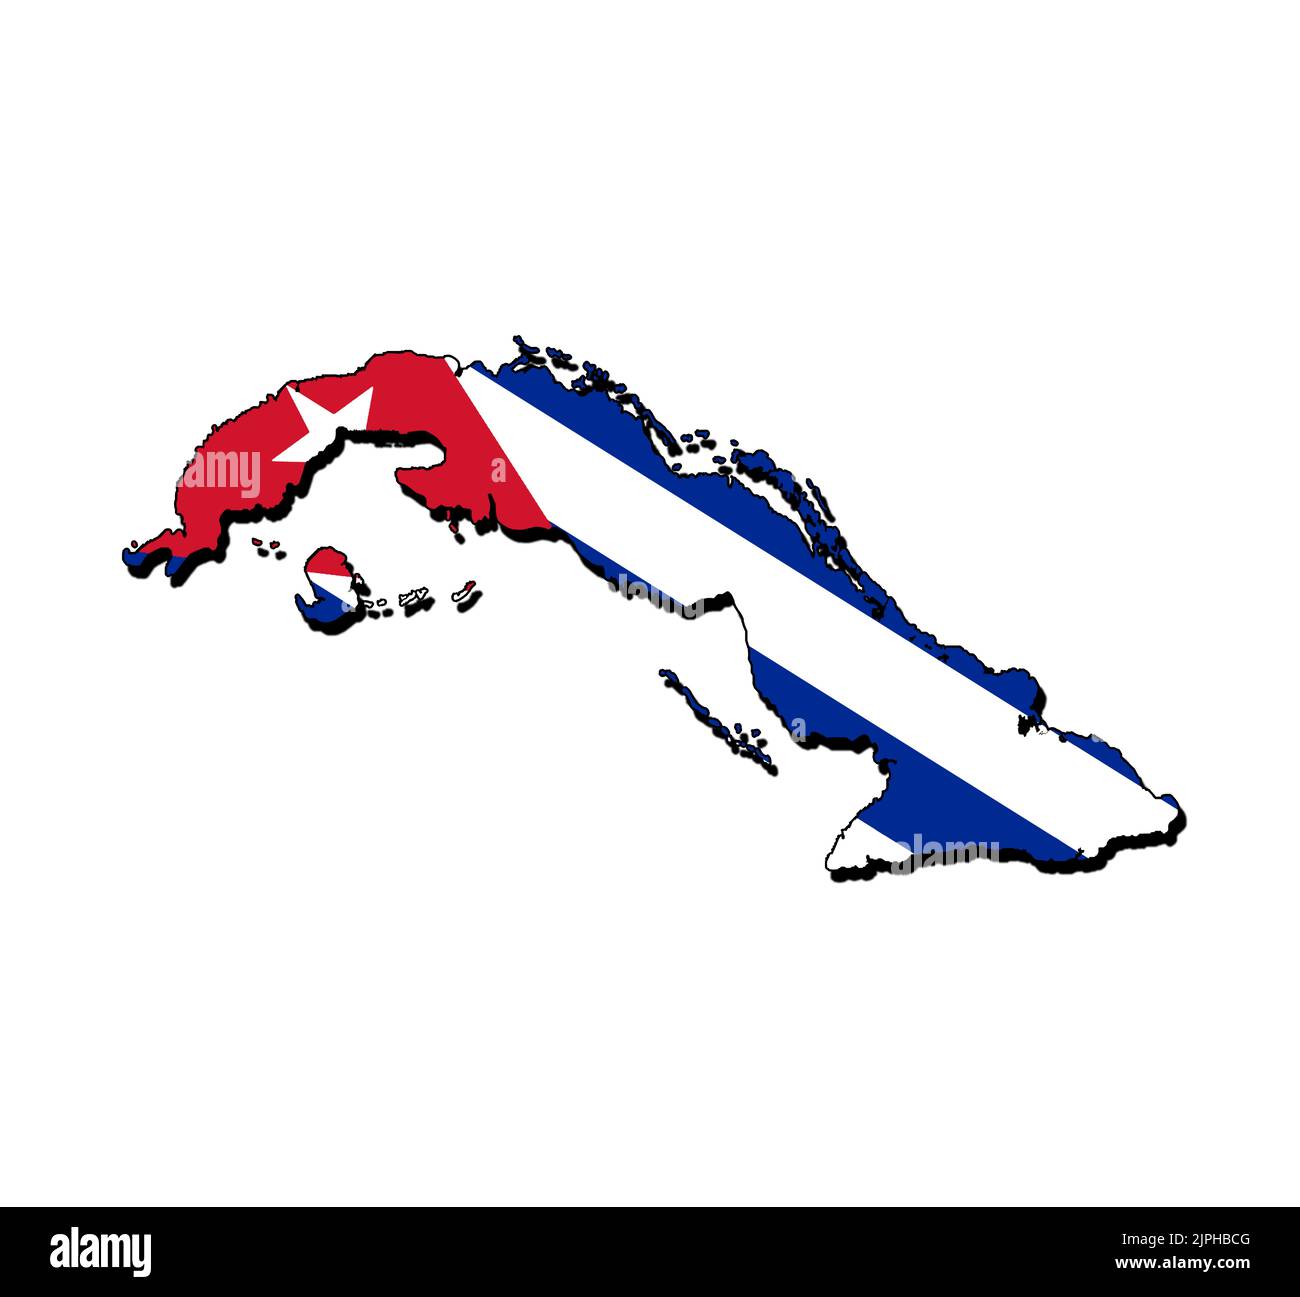 Silhouette de la carte de Cuba avec son drapeau Banque D'Images